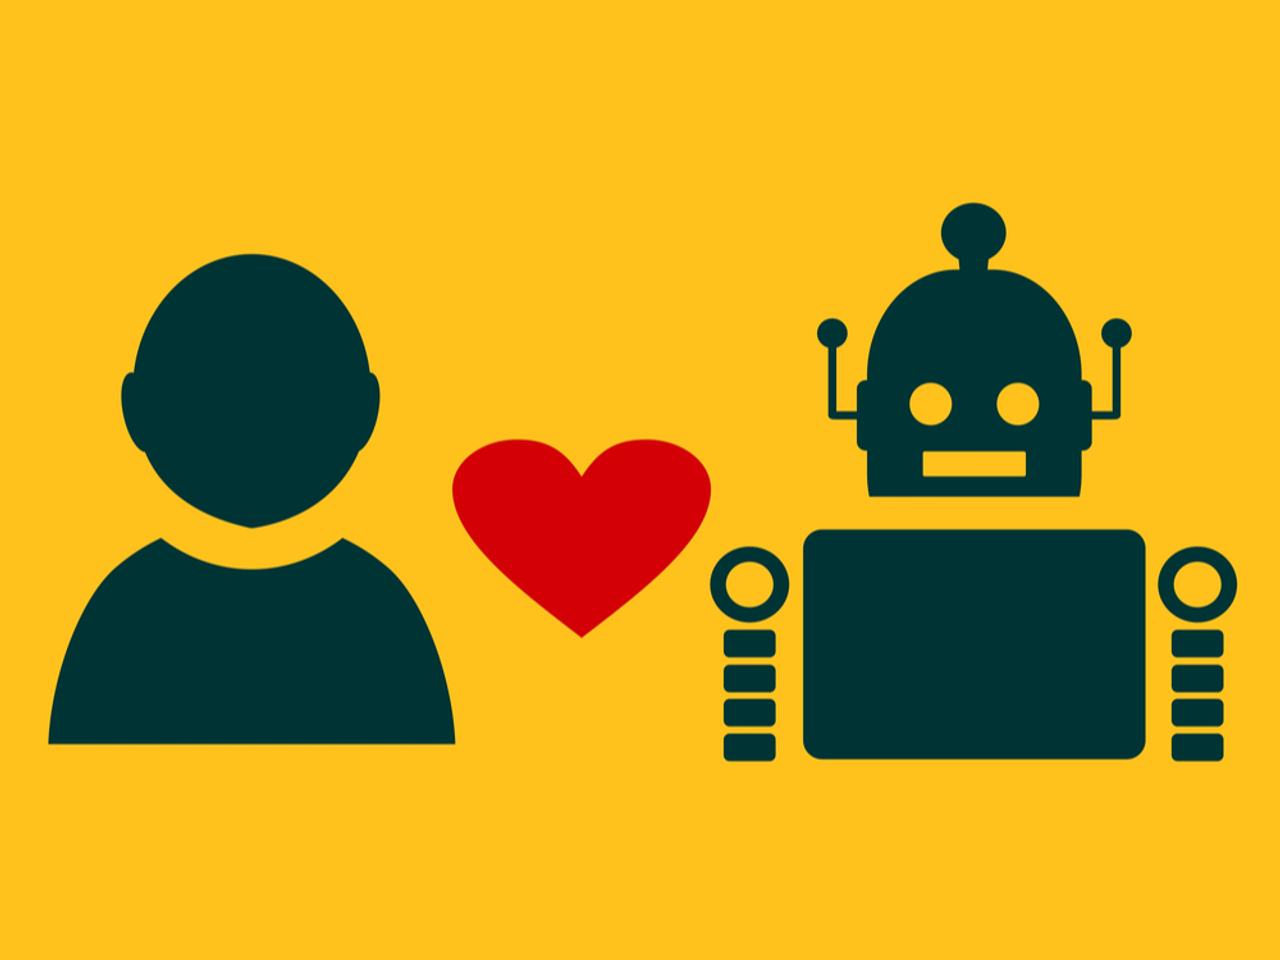 AI（人工知能）と人間は恋愛関係になれる？ 専門家に聞いてみた